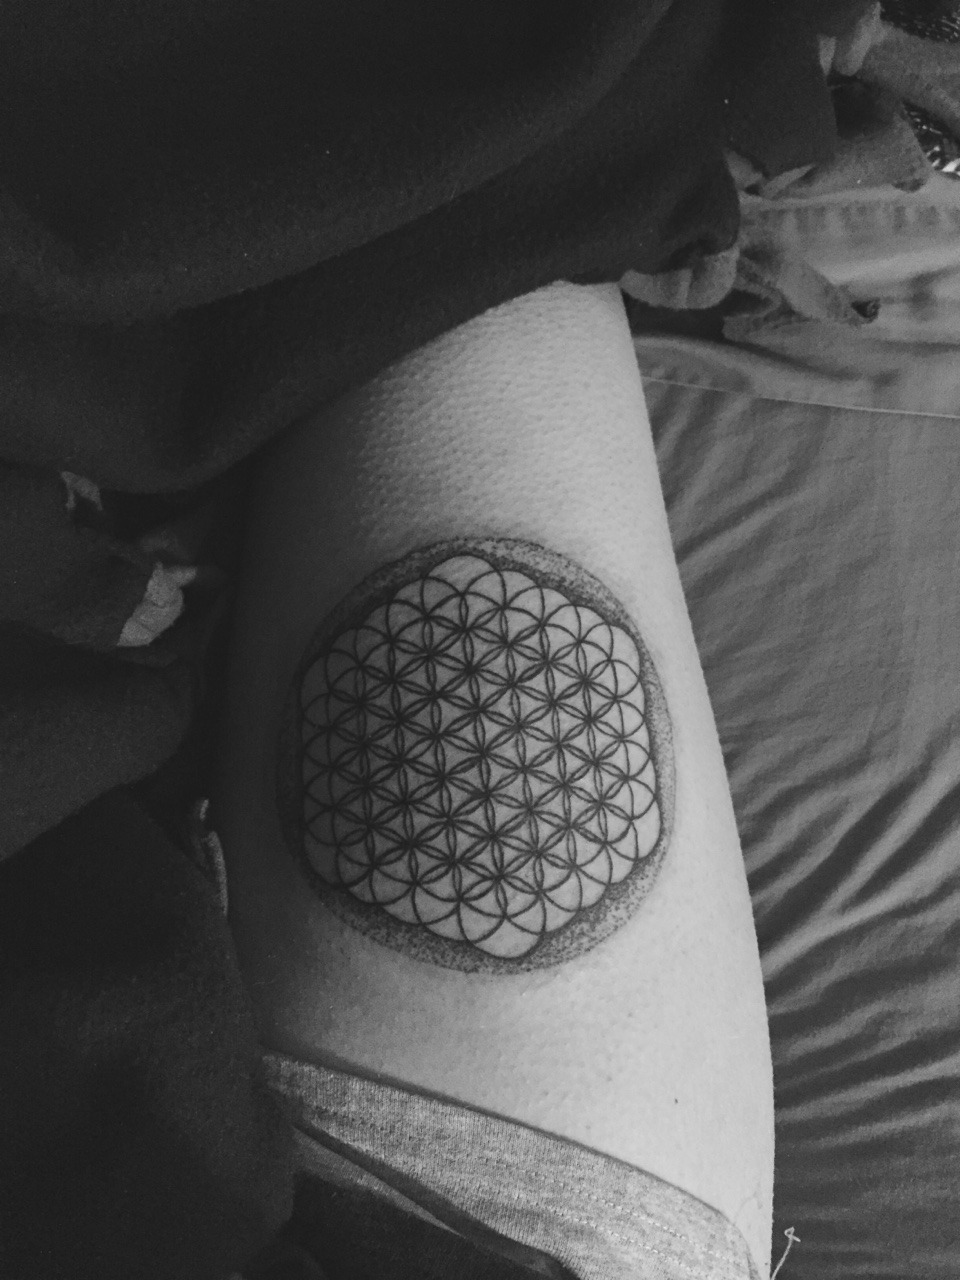 BMTH tattoo on fans 🤘🫶 Tattoo #1 - @harbz____ Tattoo #2 - @bara.h.tattoo  Tattoo #3 - @nikki.frankova Tattoo #4 - @v4mpirrr_ ... | Instagram